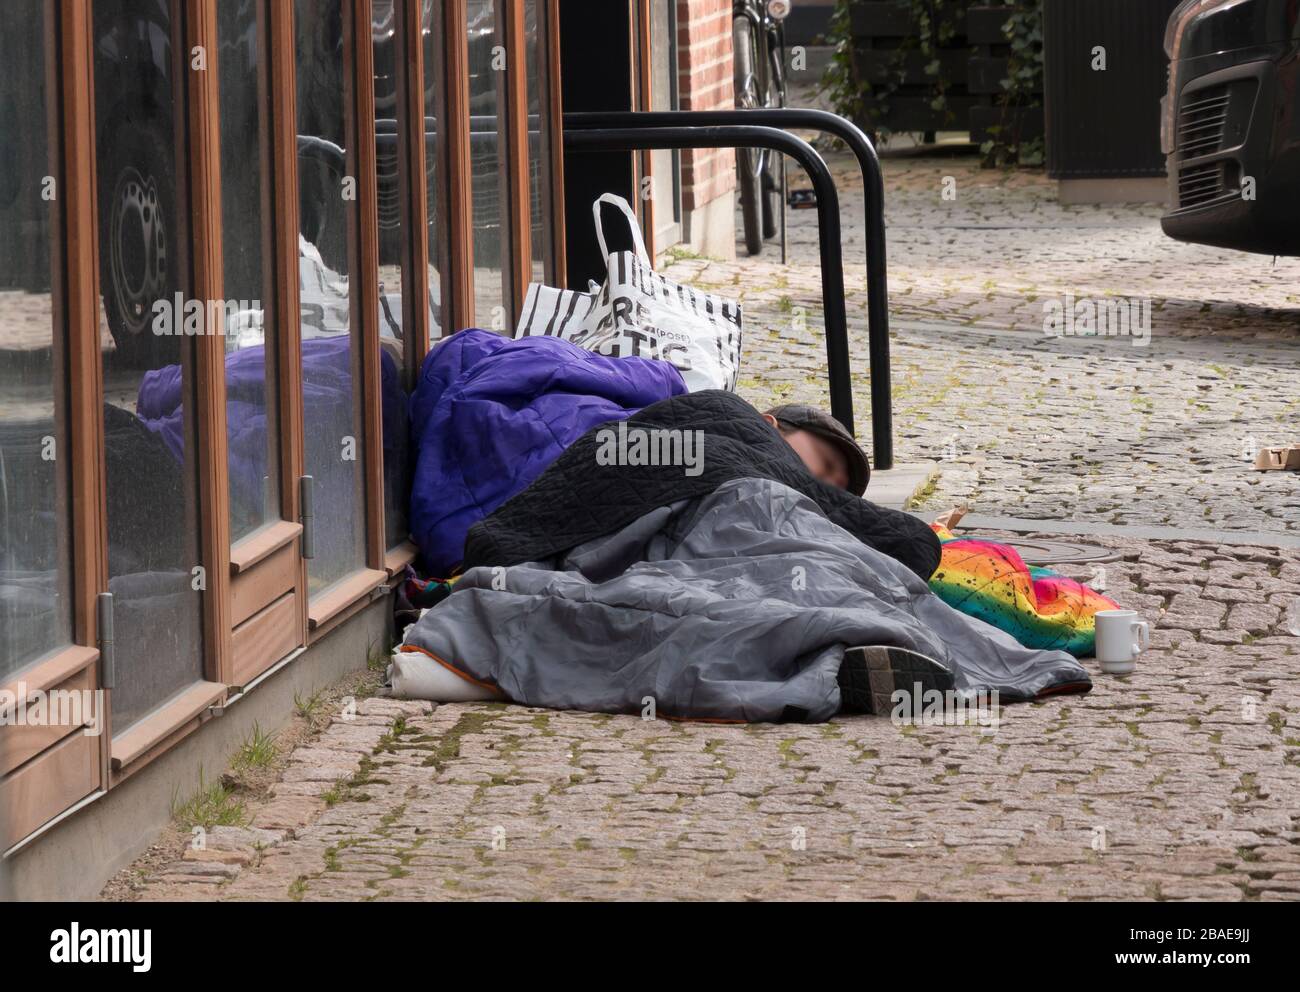 Aarhus, Danemark - 24 mars 2020: Un homme sans abri dormait sur un lit skt. Knuds Torv à Aarhus, c'est une journée froide et la main est sur les pierres dures Banque D'Images